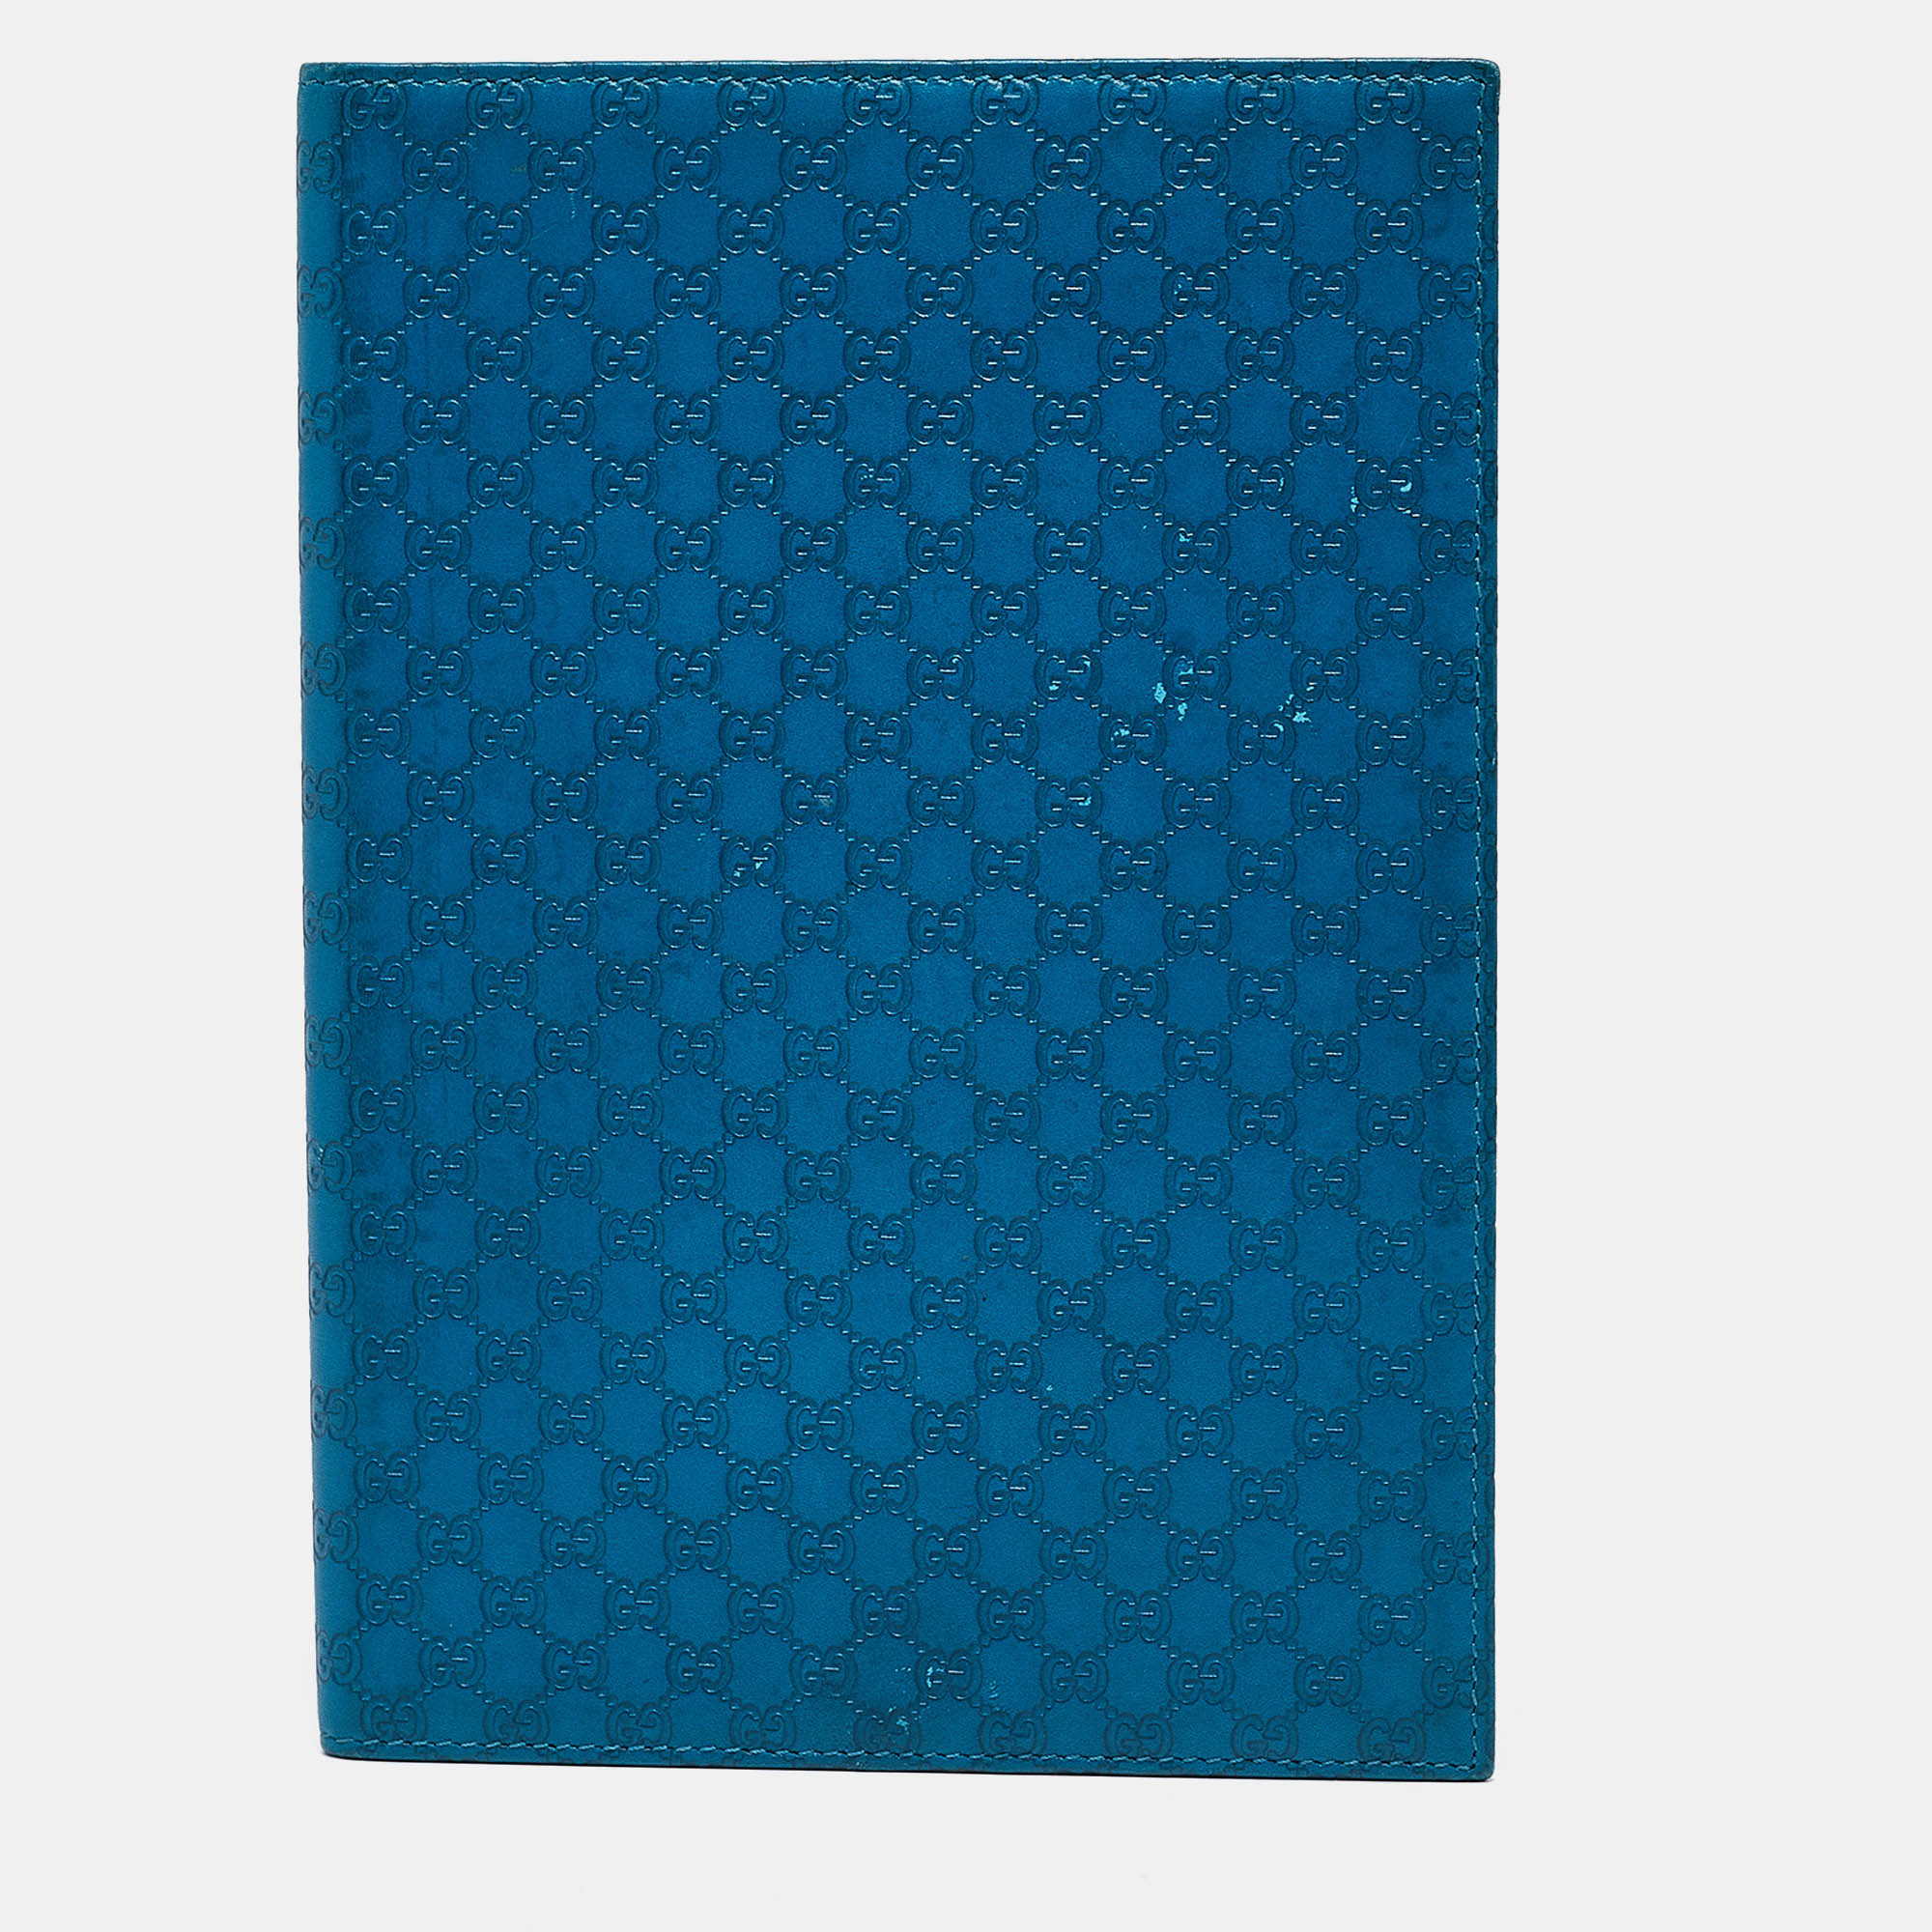 

Gucci Blue Microguccissima Leather Notebook Agenda Cover